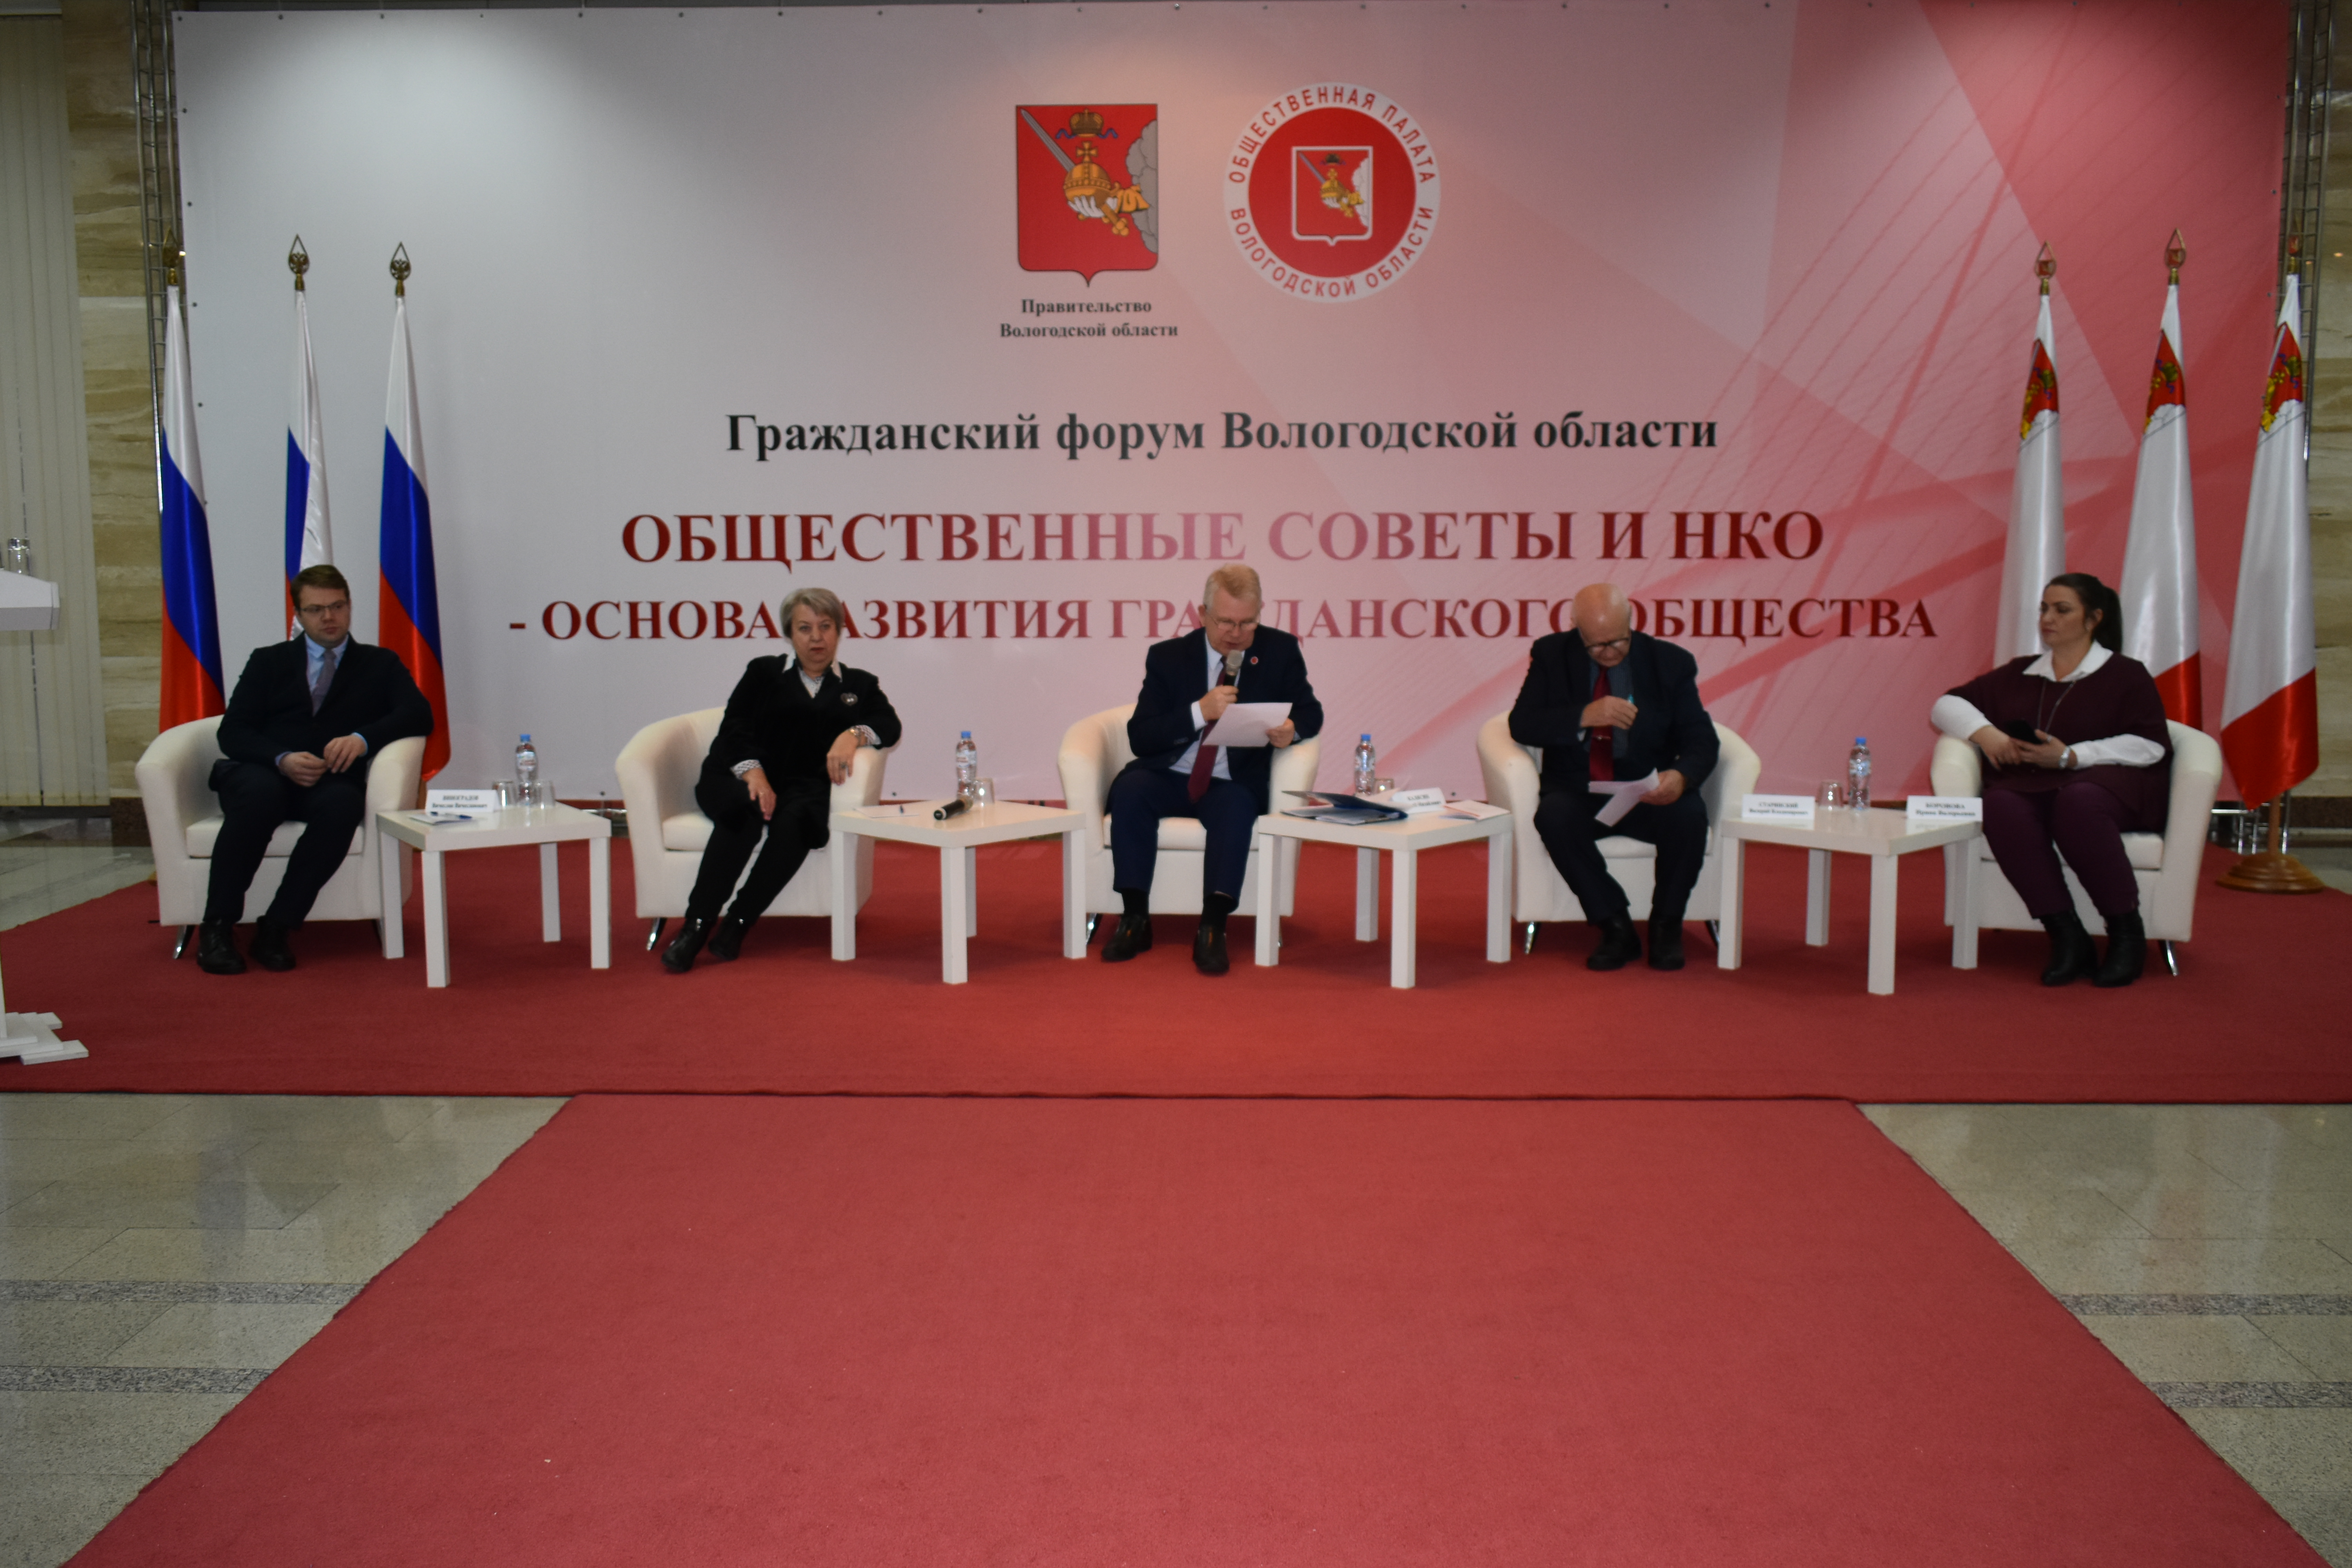 Меры по борьбе с онкологическими заболеваниями обсудили на Гражданском форуме Общественной палаты Вологодской области